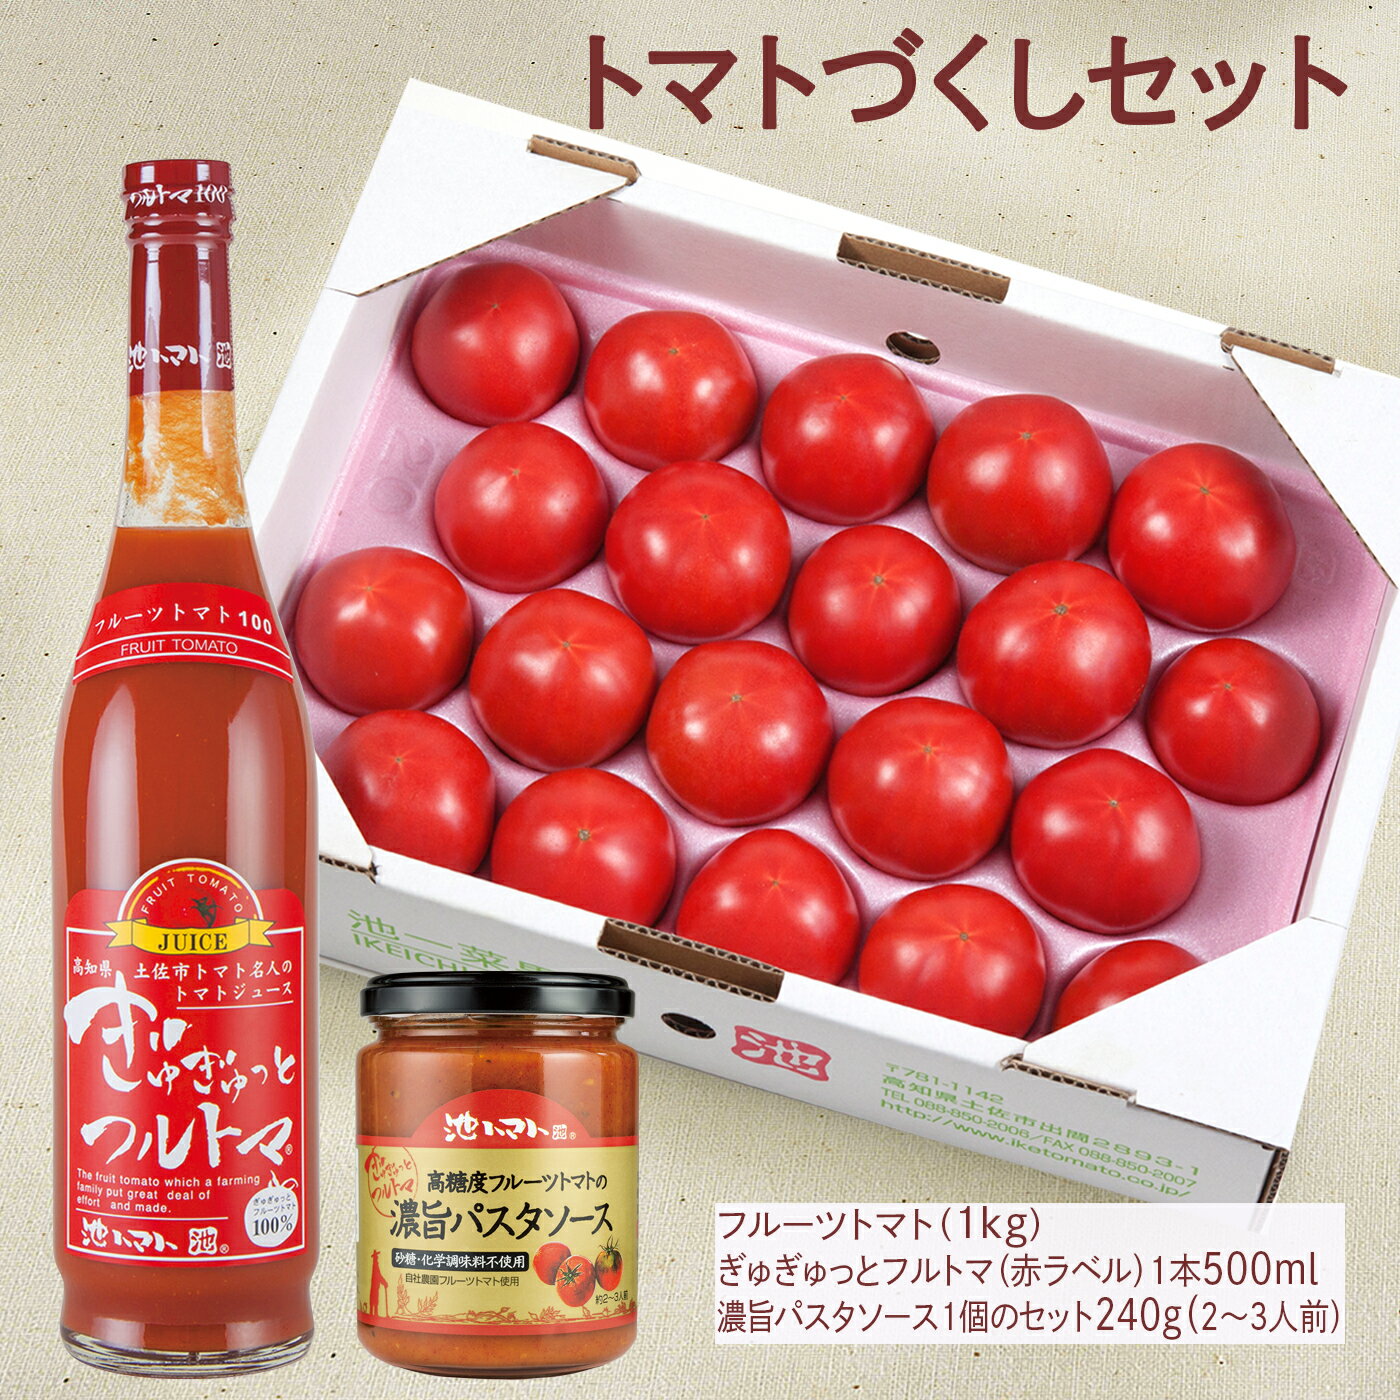 【ふるさと納税】トマトづくし フルーツトマト1kg ぎゅぎゅ